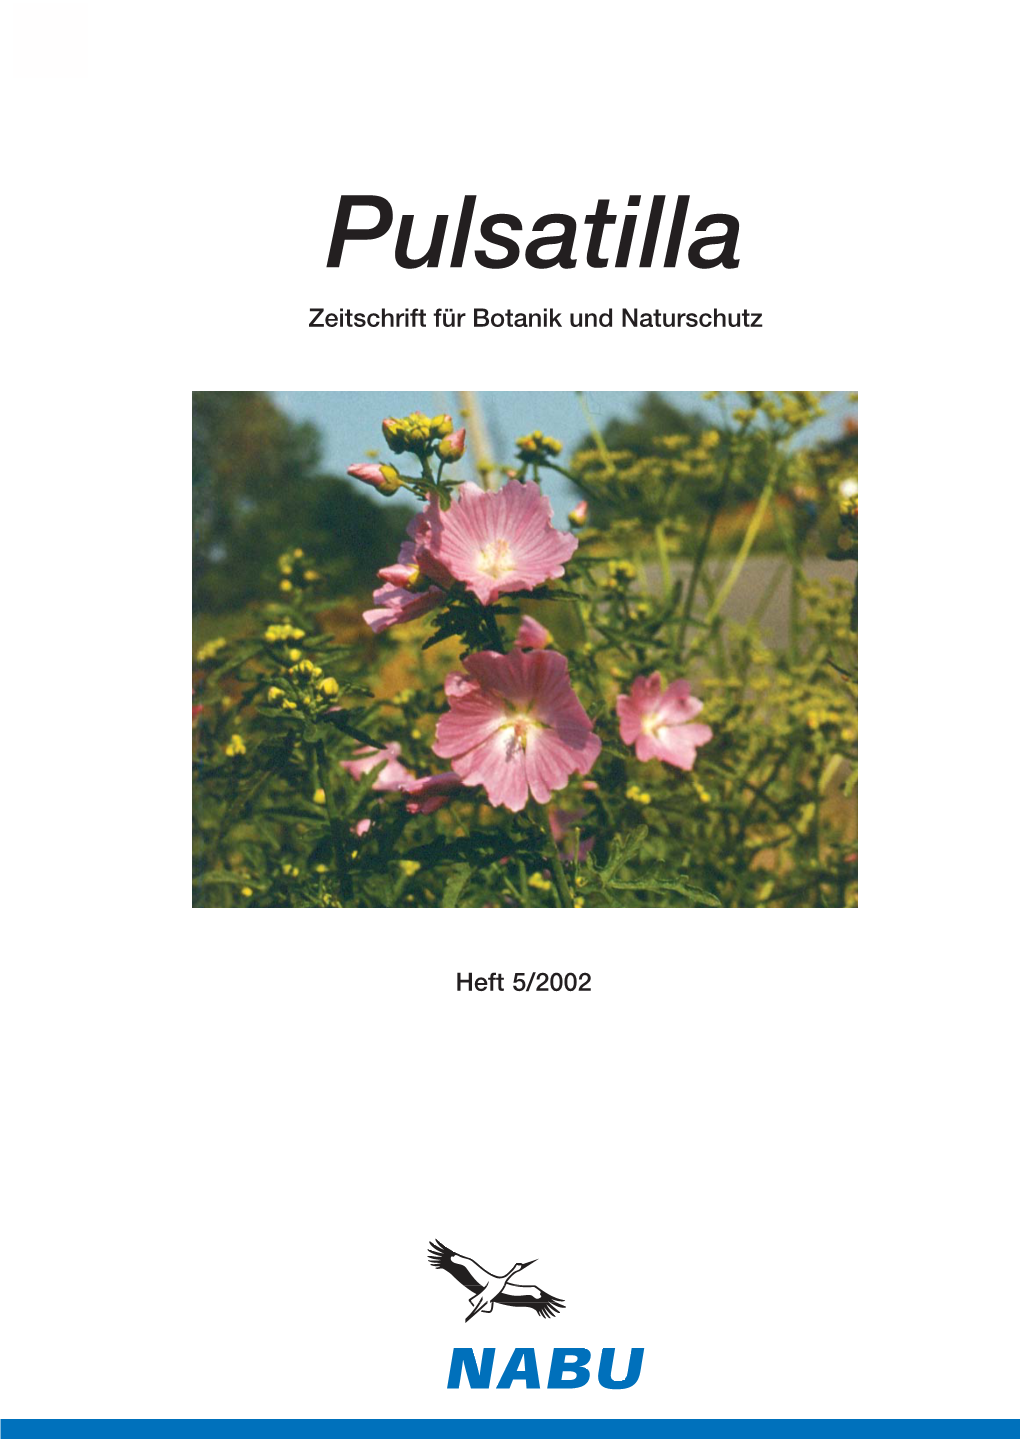 Pulsatilla, Heft 5, 2002